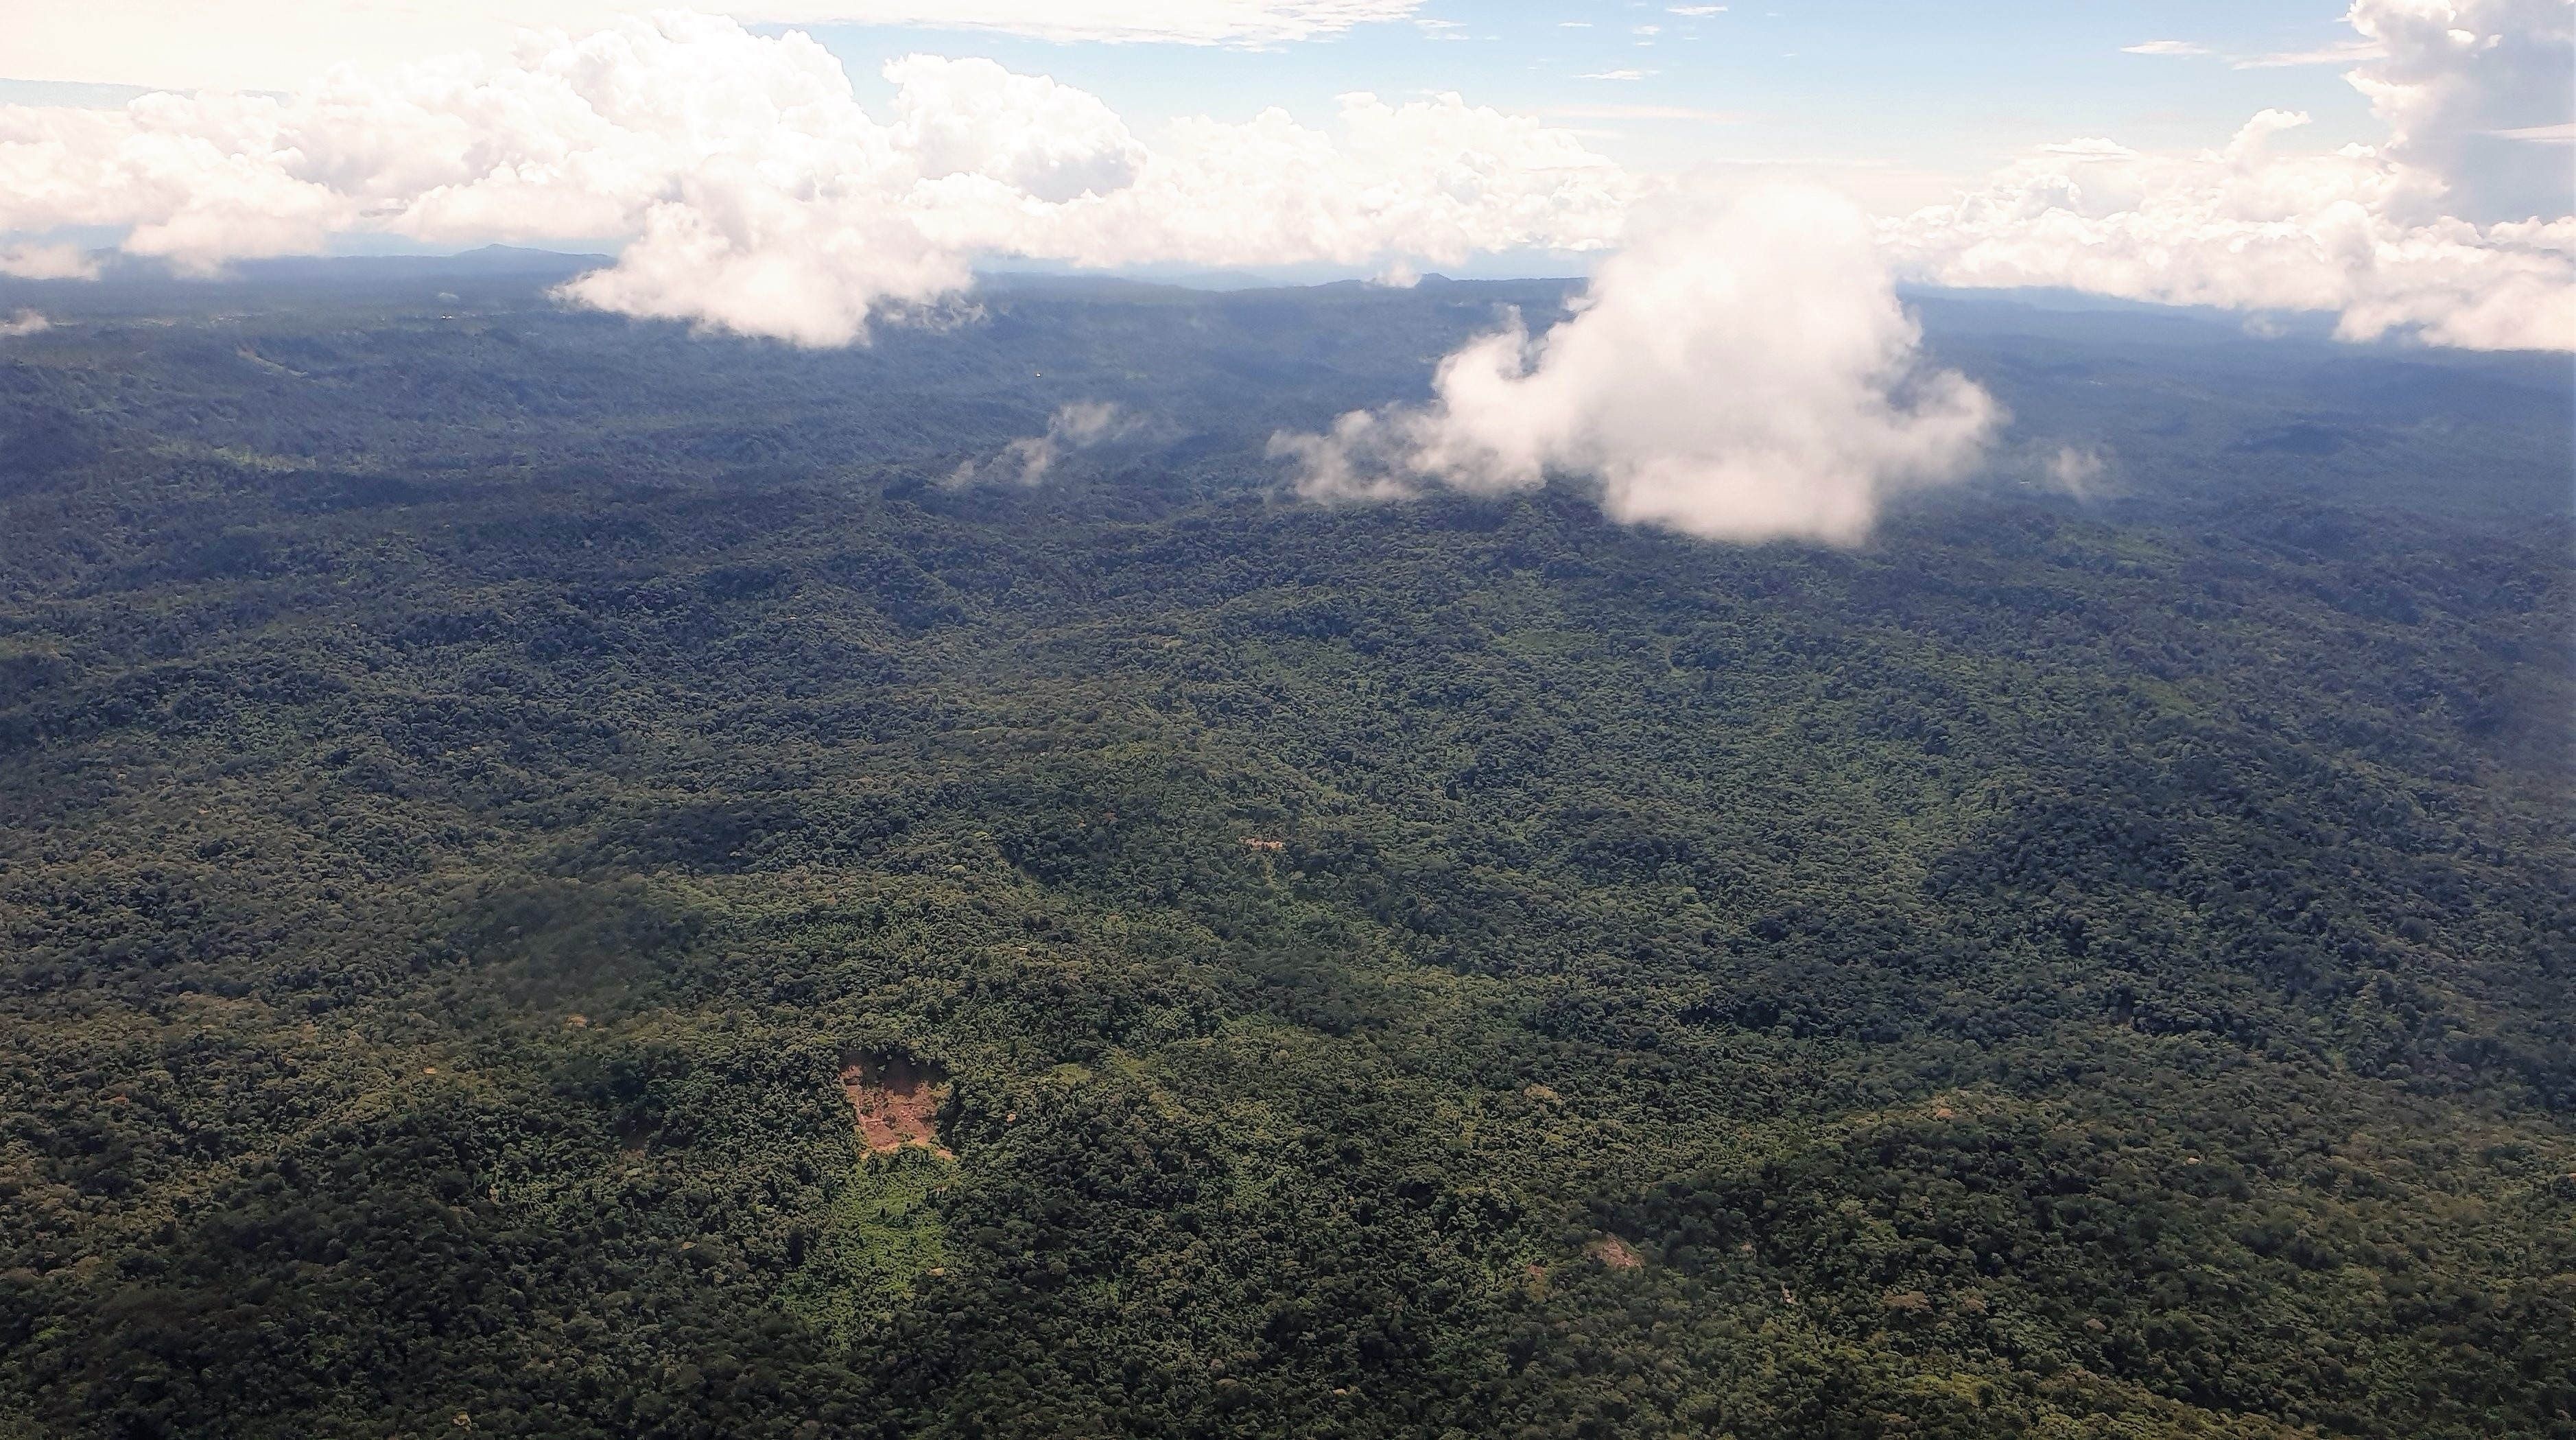 Fotografía tomada en junio de 2020 en la que se registró una vista aérea de una zona boscosa de la Amazonia ecuatoriana, en la provincia de Pastaza, fronteriza con Perú (Ecuador). EFE/Juan Francisco Chávez/Archivo
